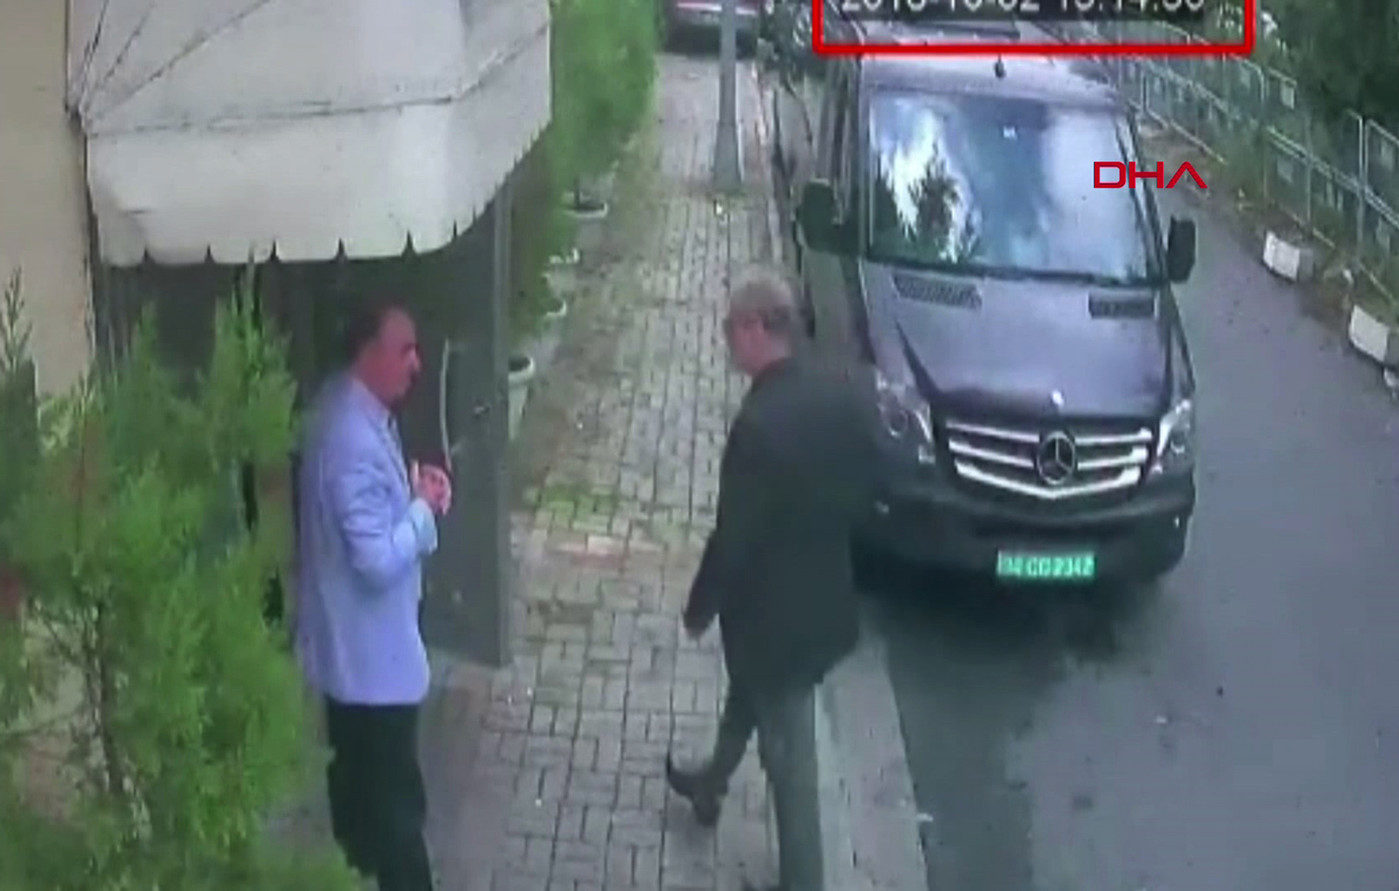 Khashoggi entering Saudi embassy in Turkey